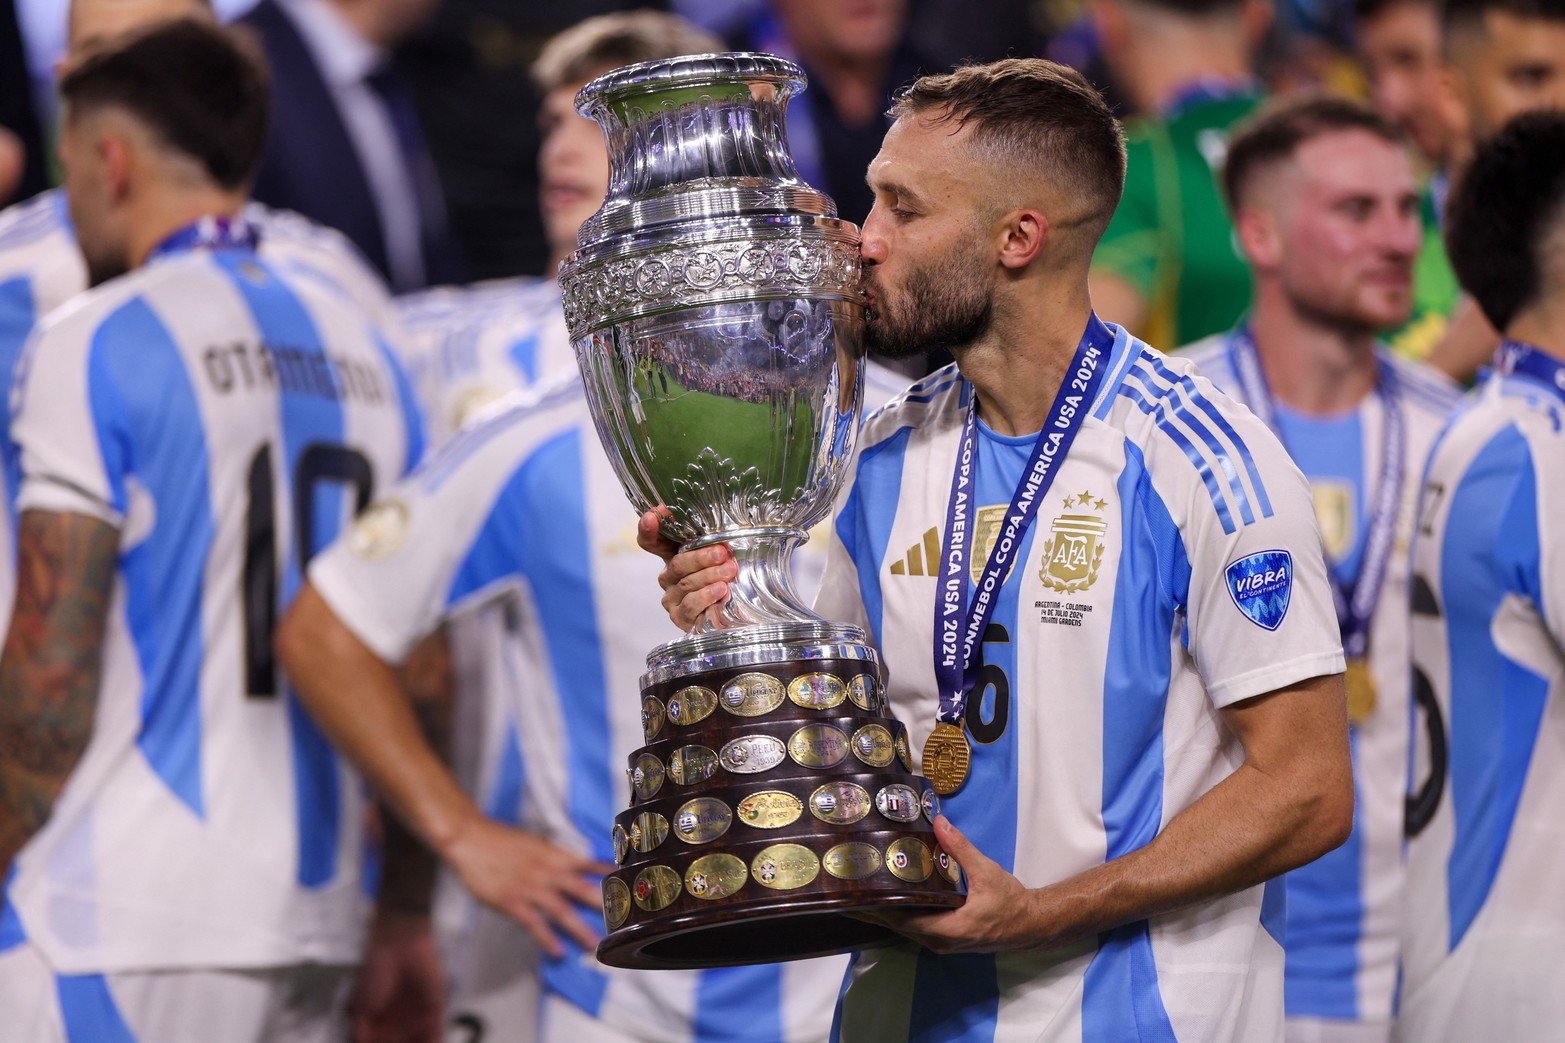 Las mejores imágenes que quedarán guardada en nuestra memoria de un momento histórico de la Selección Argentina de fútbol. 